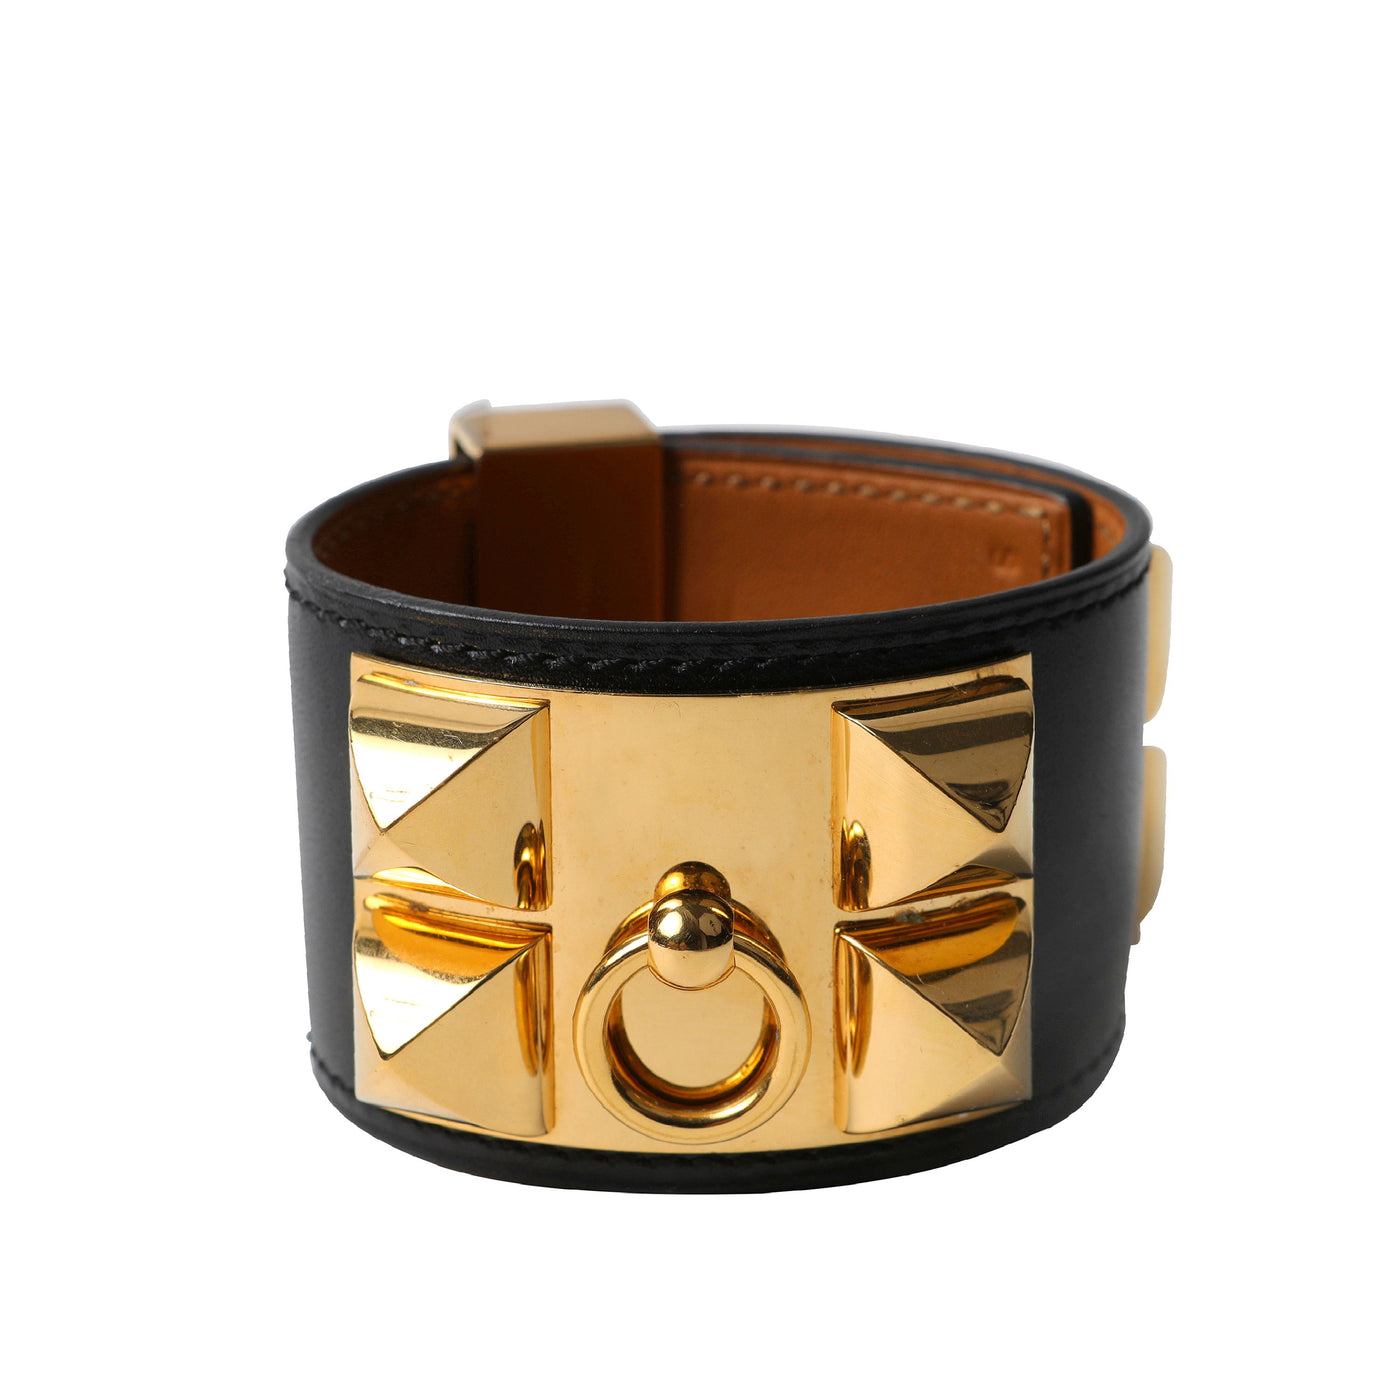 Hermès Black Collier de Chien Cuff w/ Gold Hardware